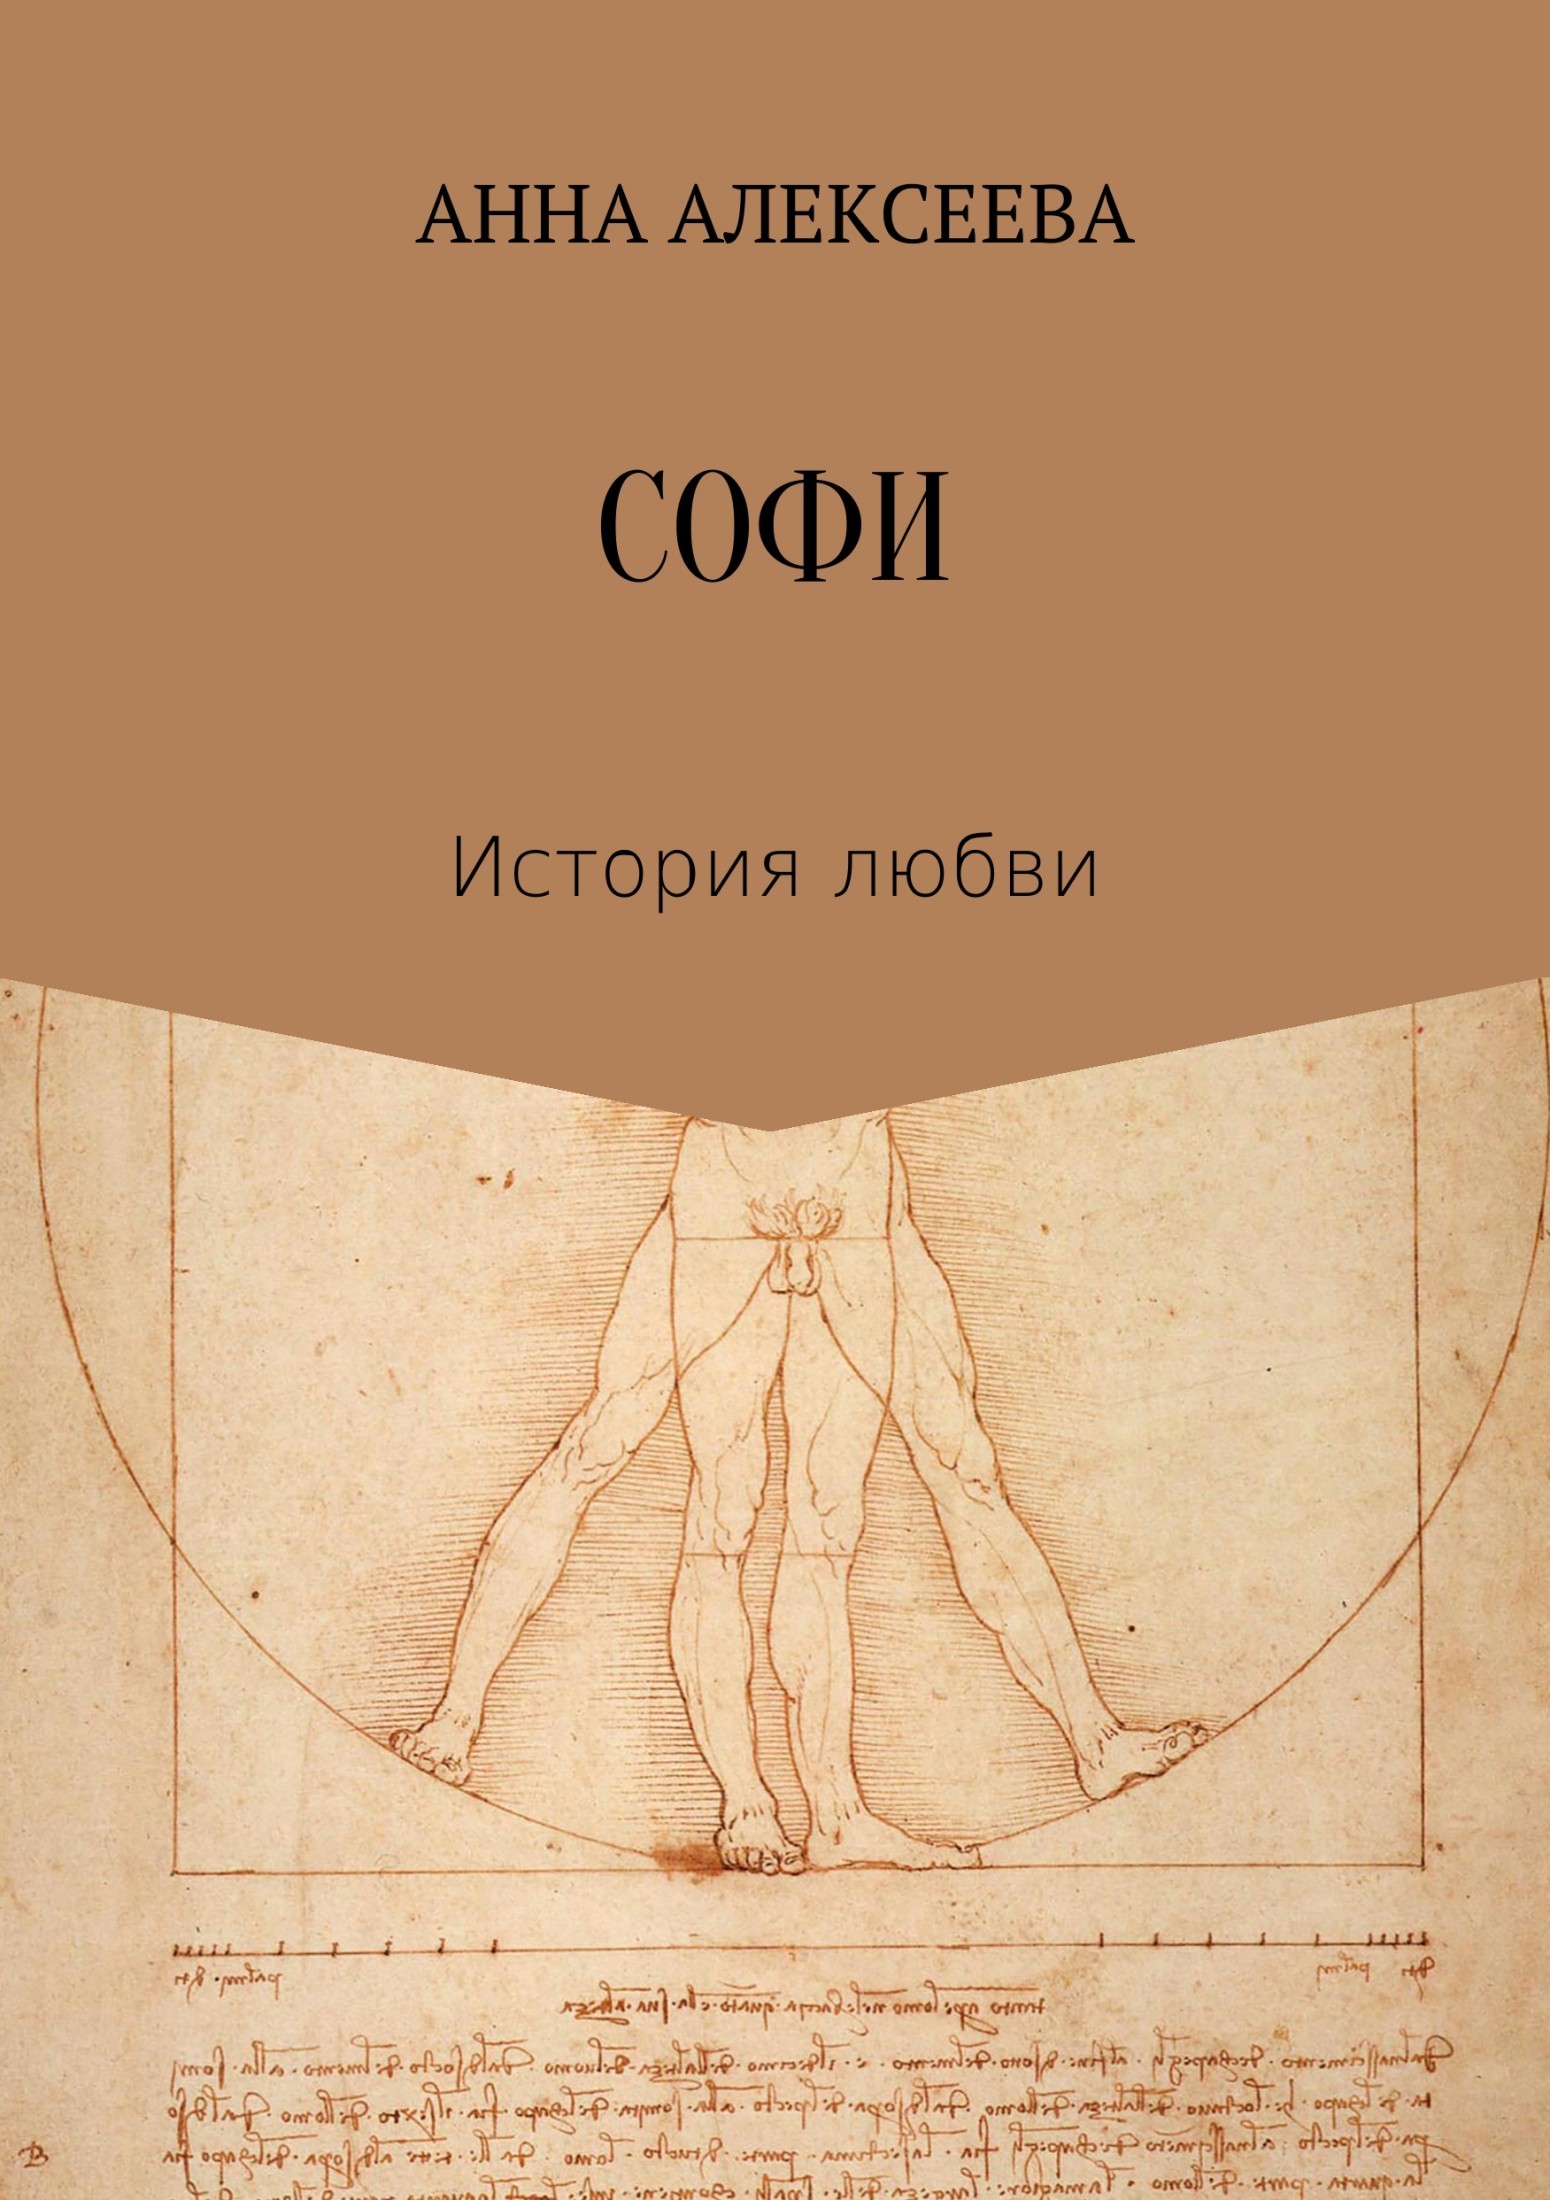 Книга Софи из серии , созданная Анна Алексеева, может относится к жанру Литература 19 века. Стоимость электронной книги Софи с идентификатором 30796073 составляет 0 руб.